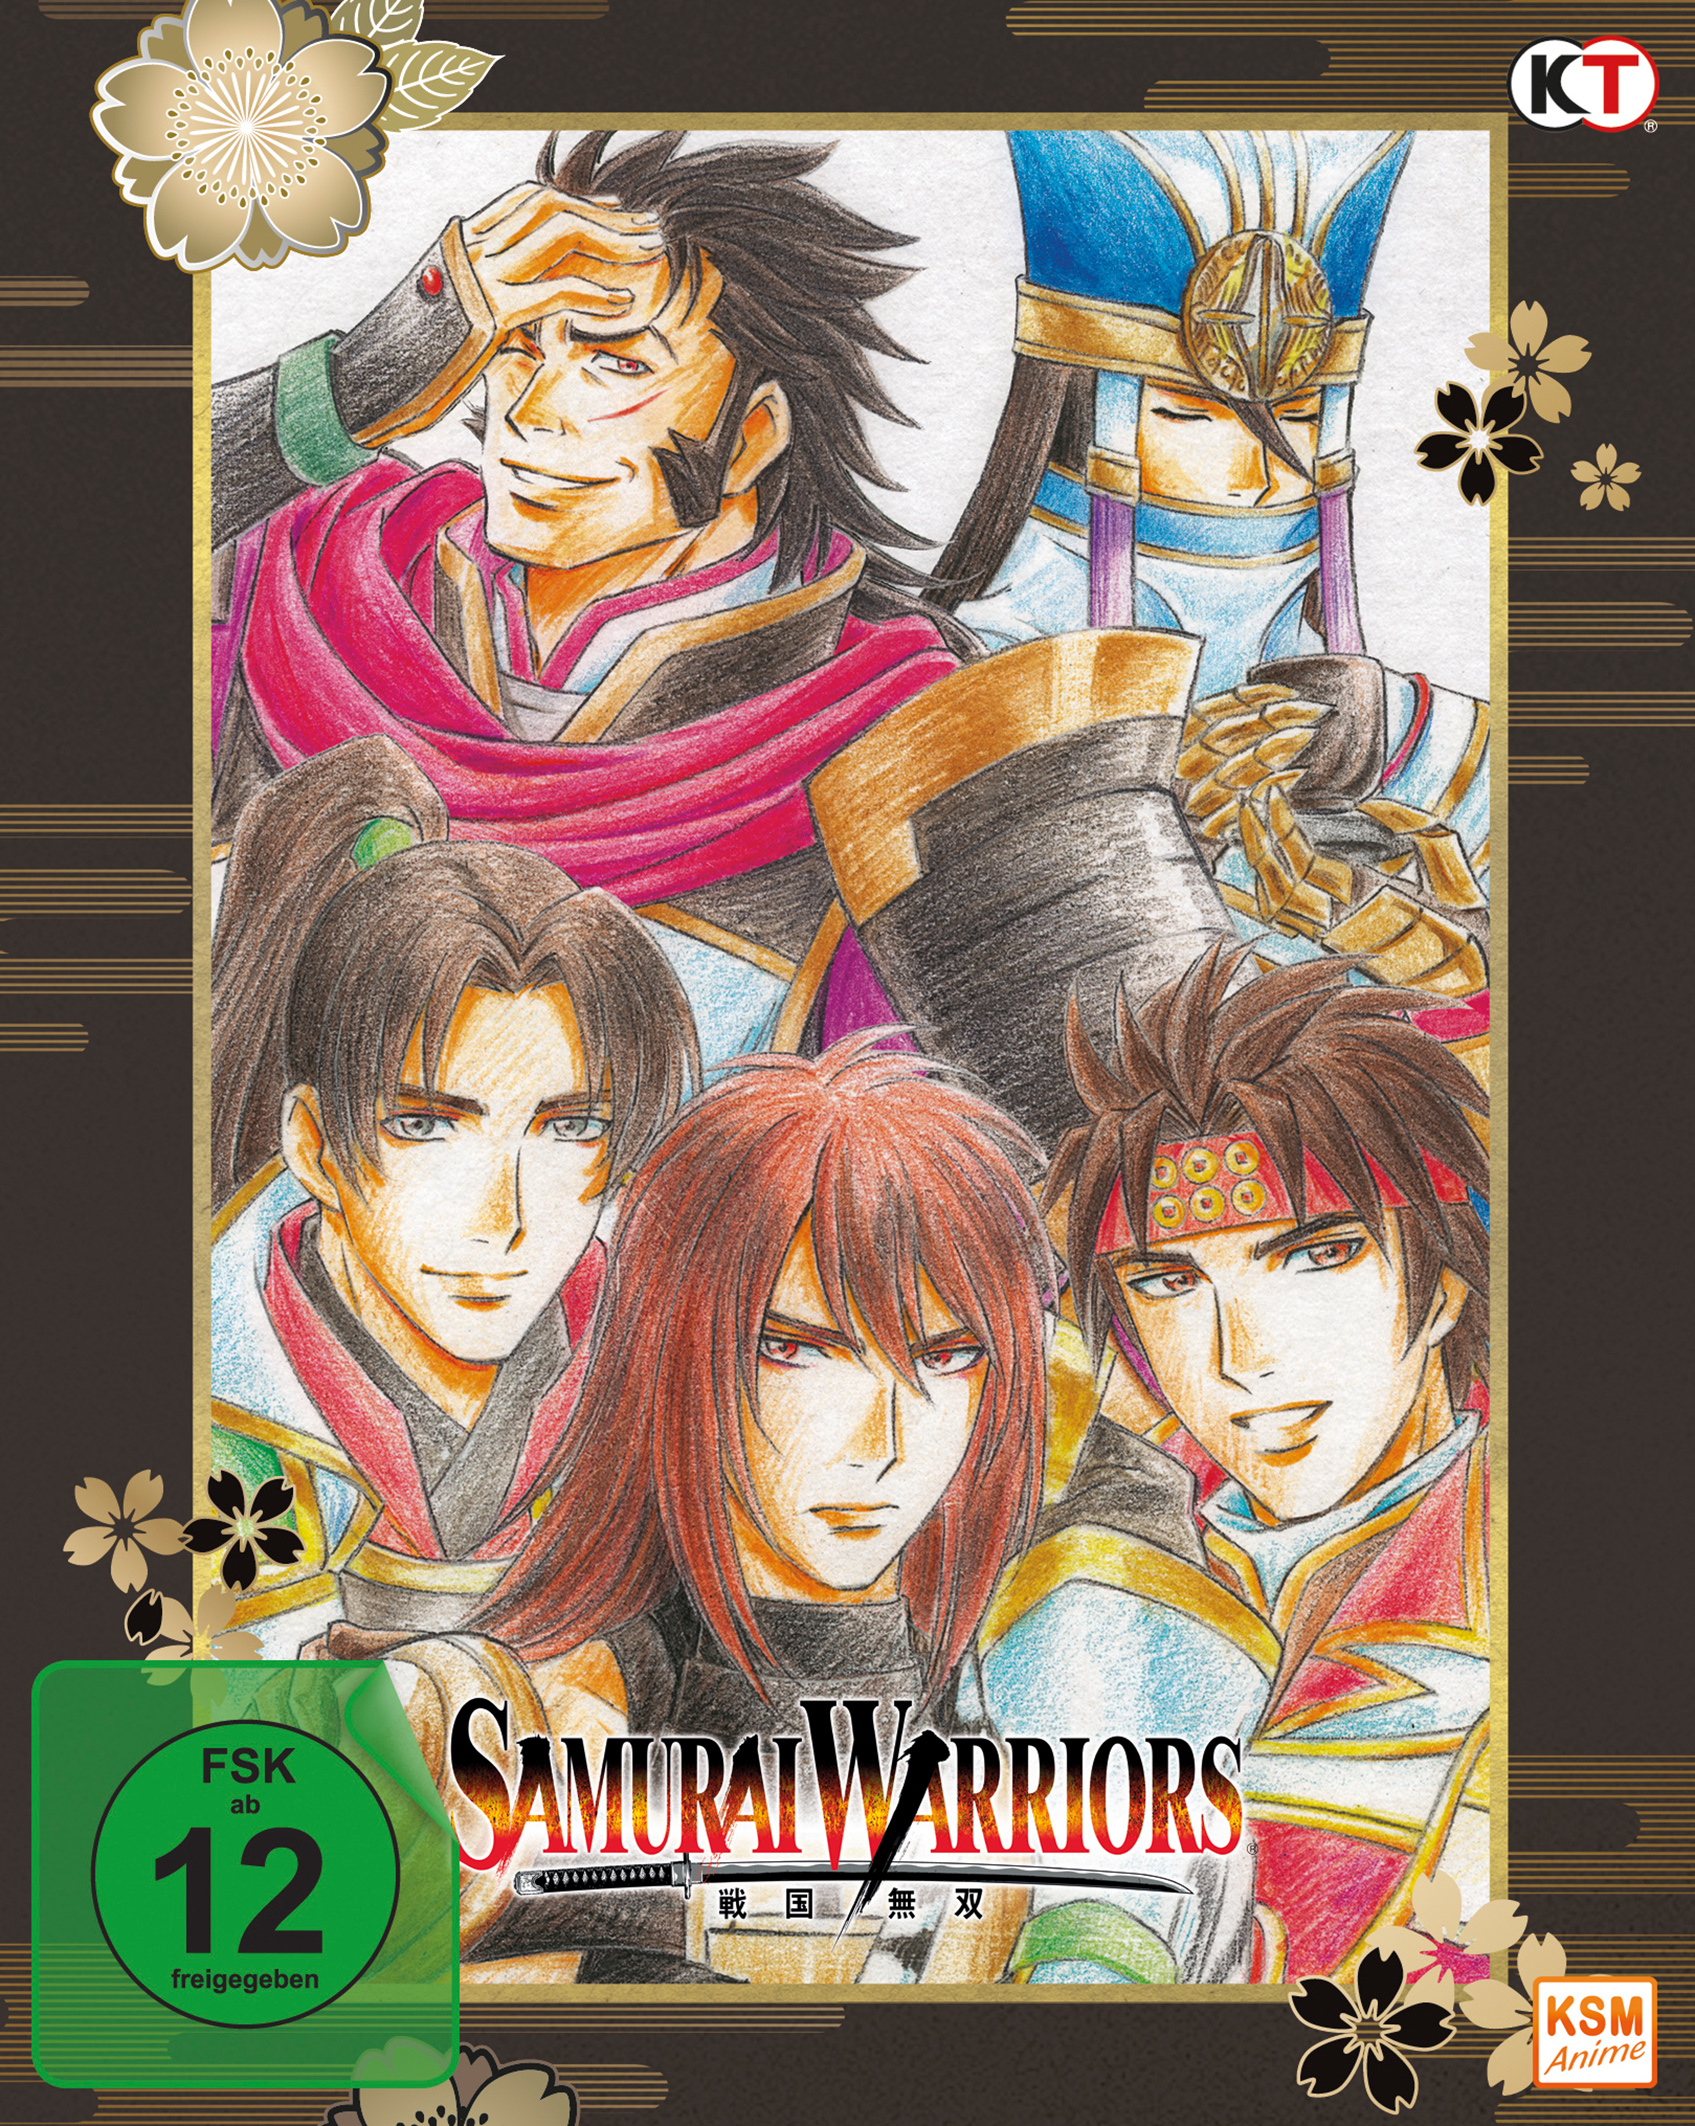 von BRs -3 Ep.1-12 Legende + Warriors Samurai Die Sanada Movie Blu-ray - Sp.: